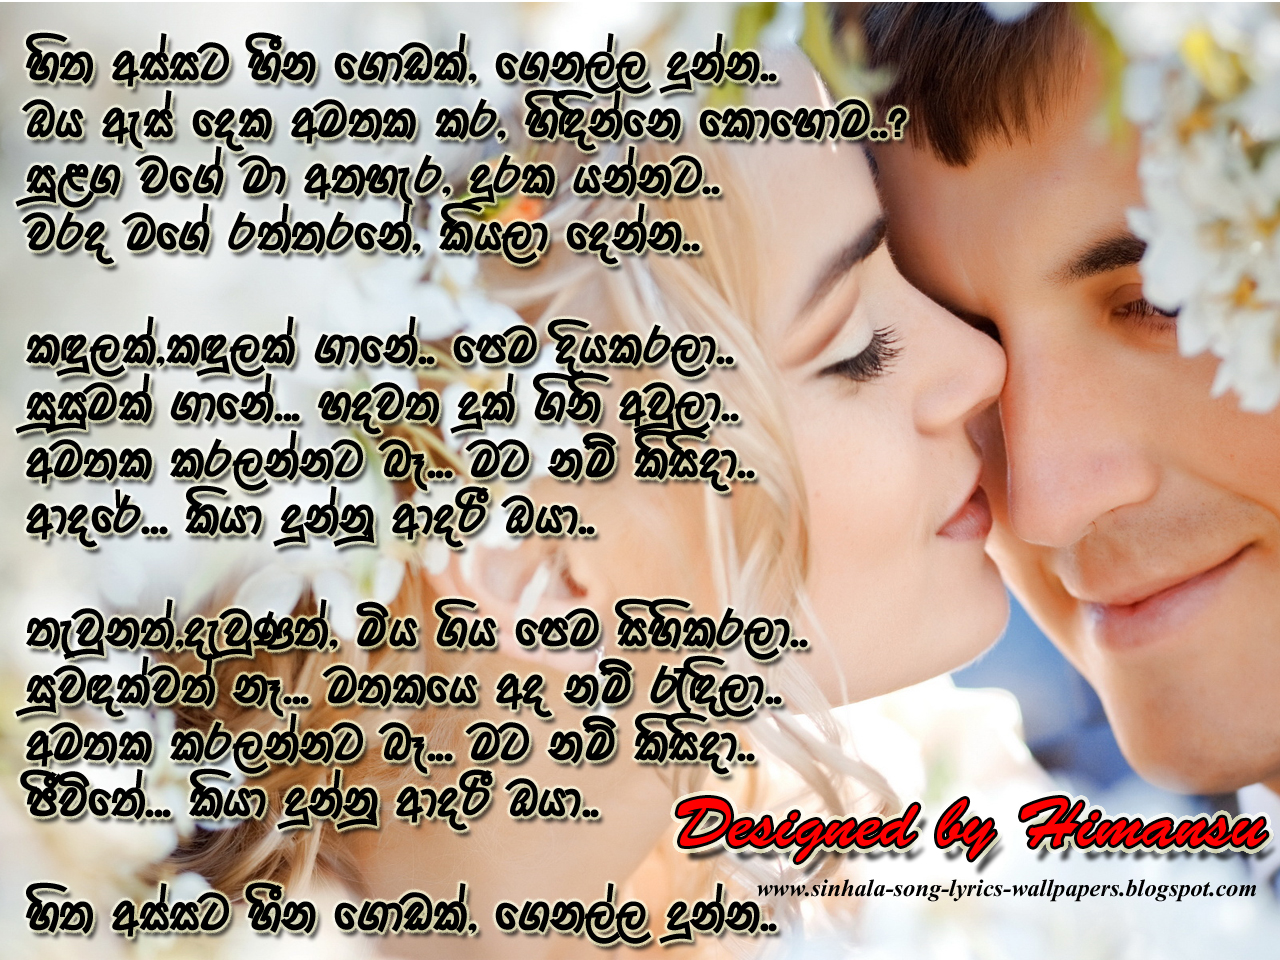 Sinhala song lyrics in sinhala font - honkb